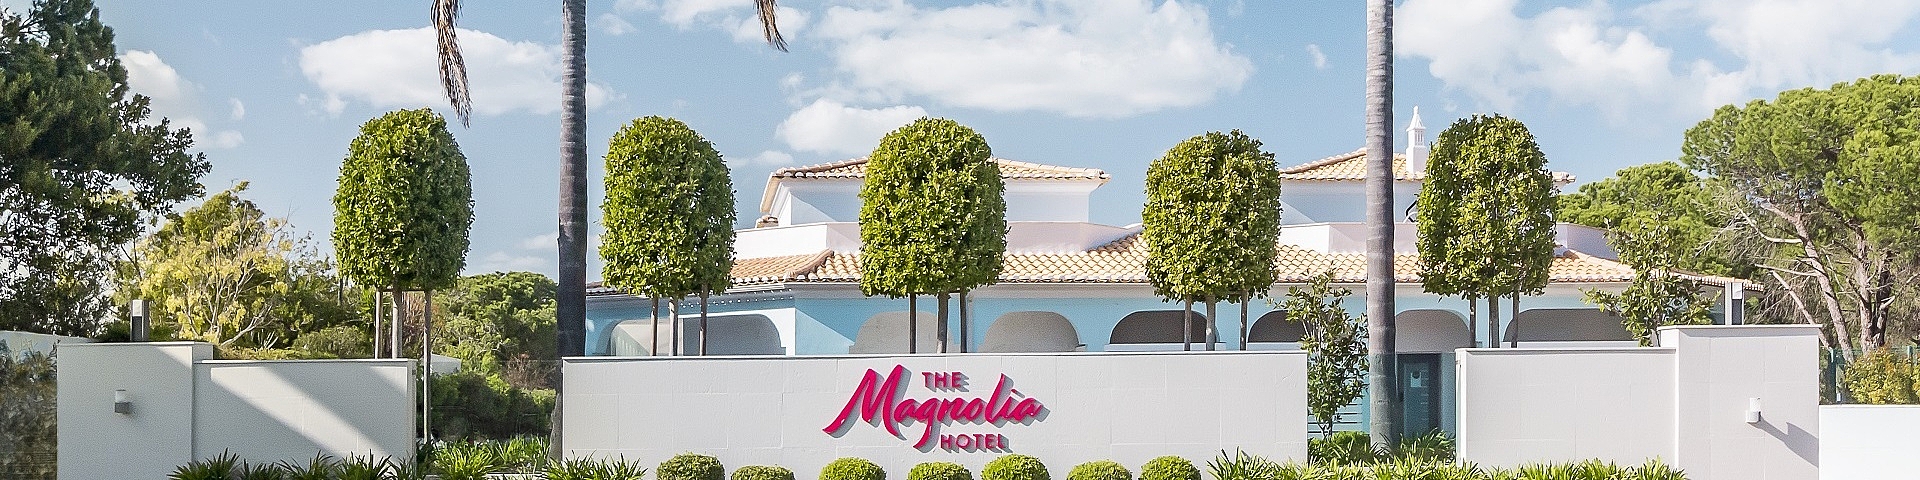 Hotel Magnolia - Quinta do Lago